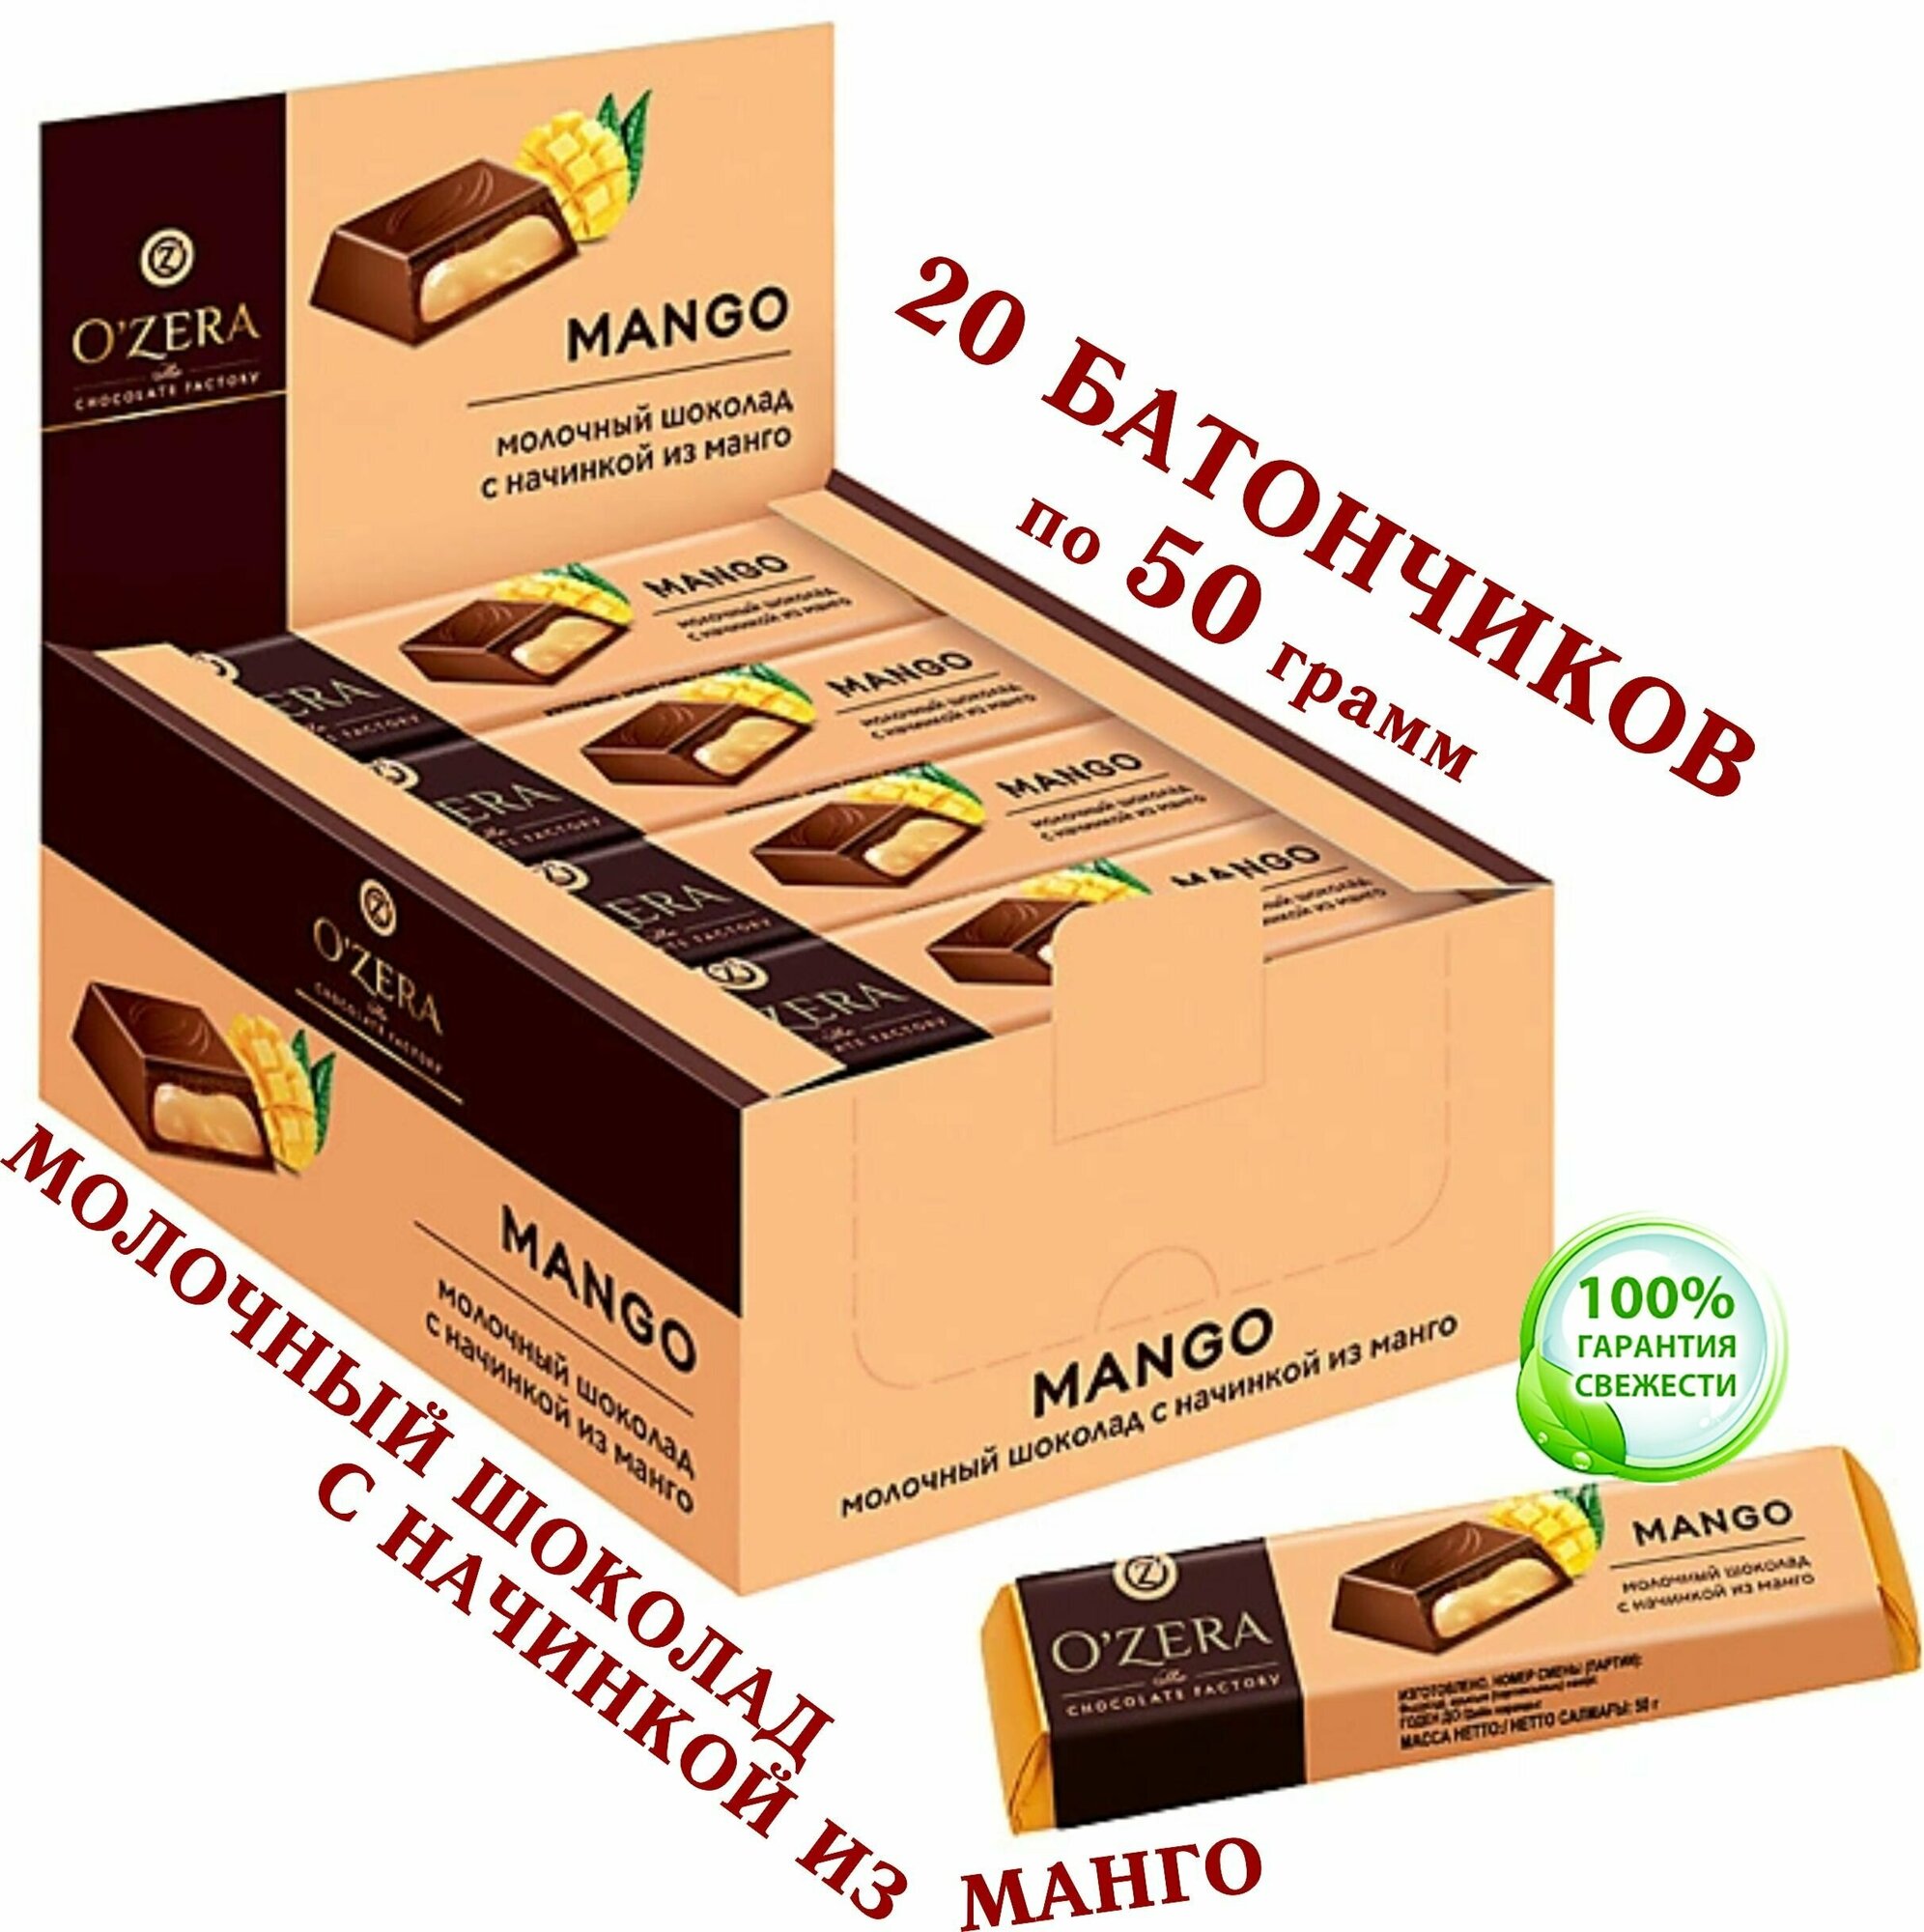 OZERA Шоколадный батончик Mango (манго), 20шт. Х 50 г